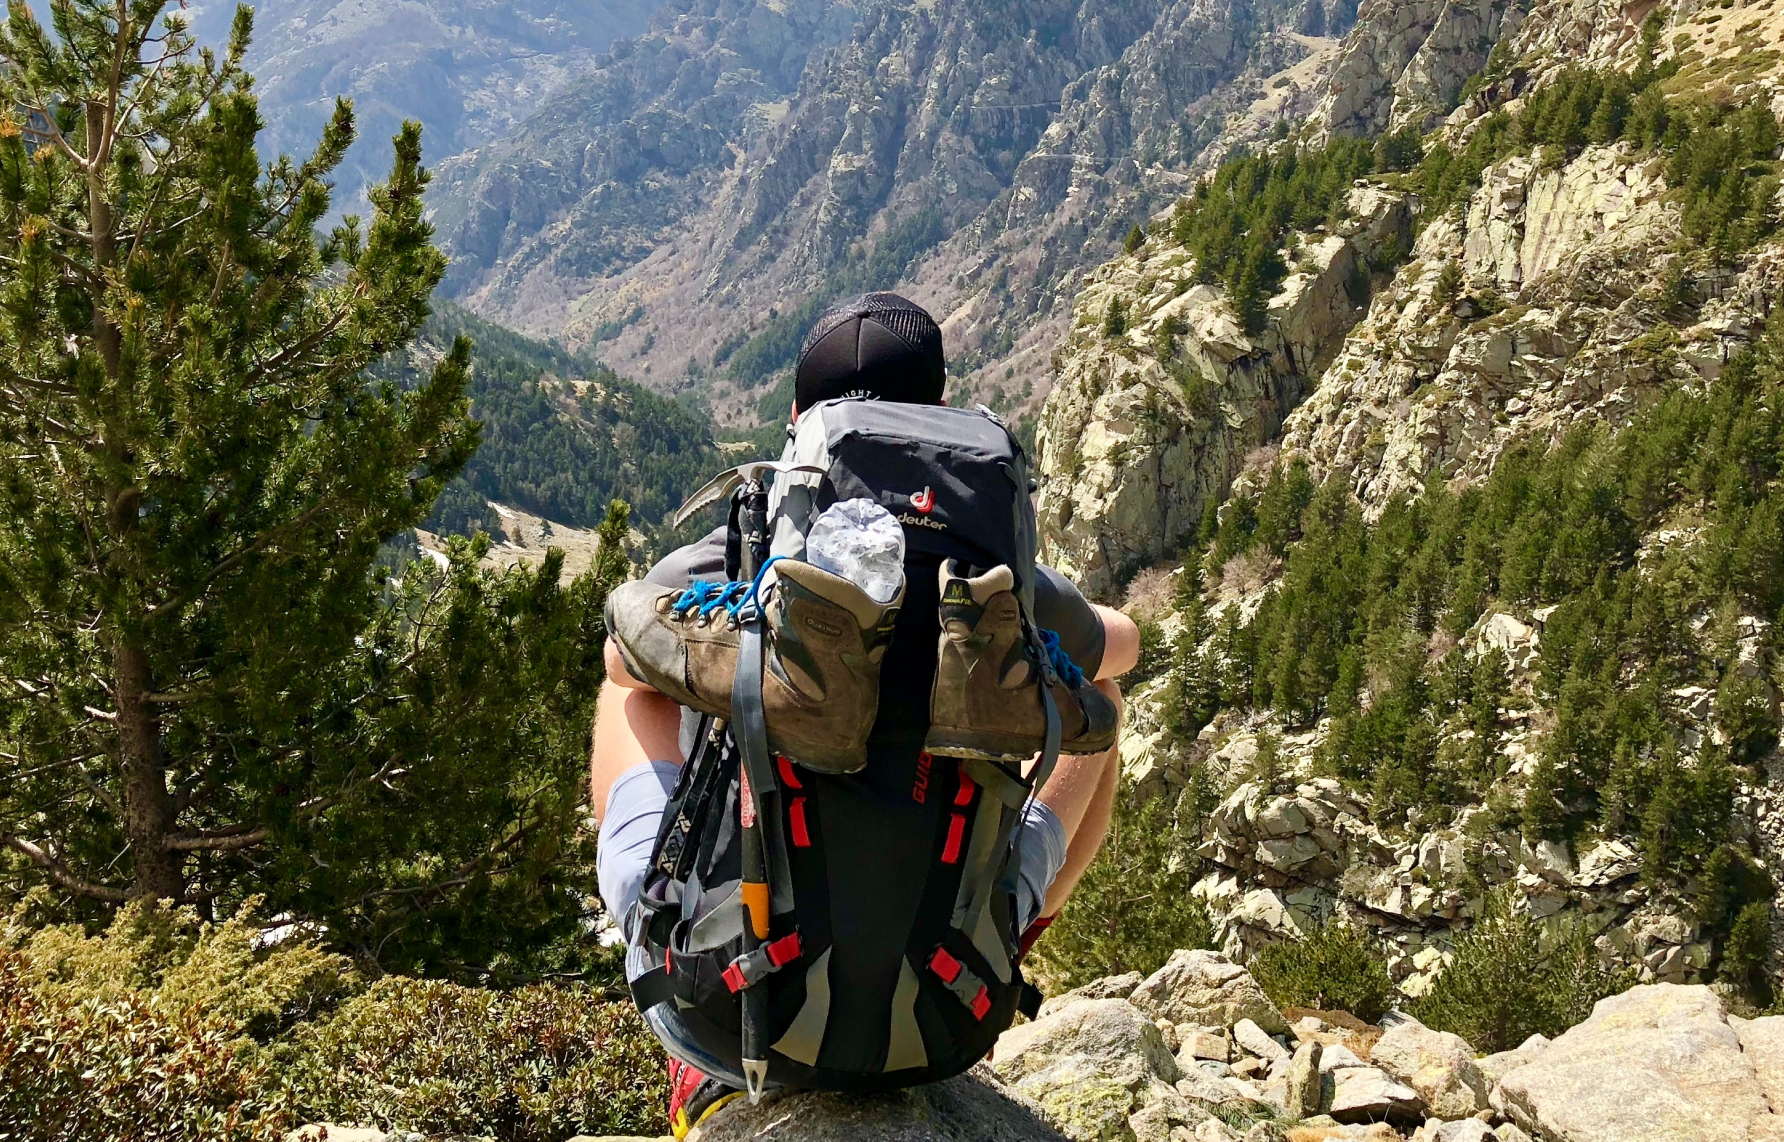 Protection et housse pour sac à dos de randonnée ou de trekking